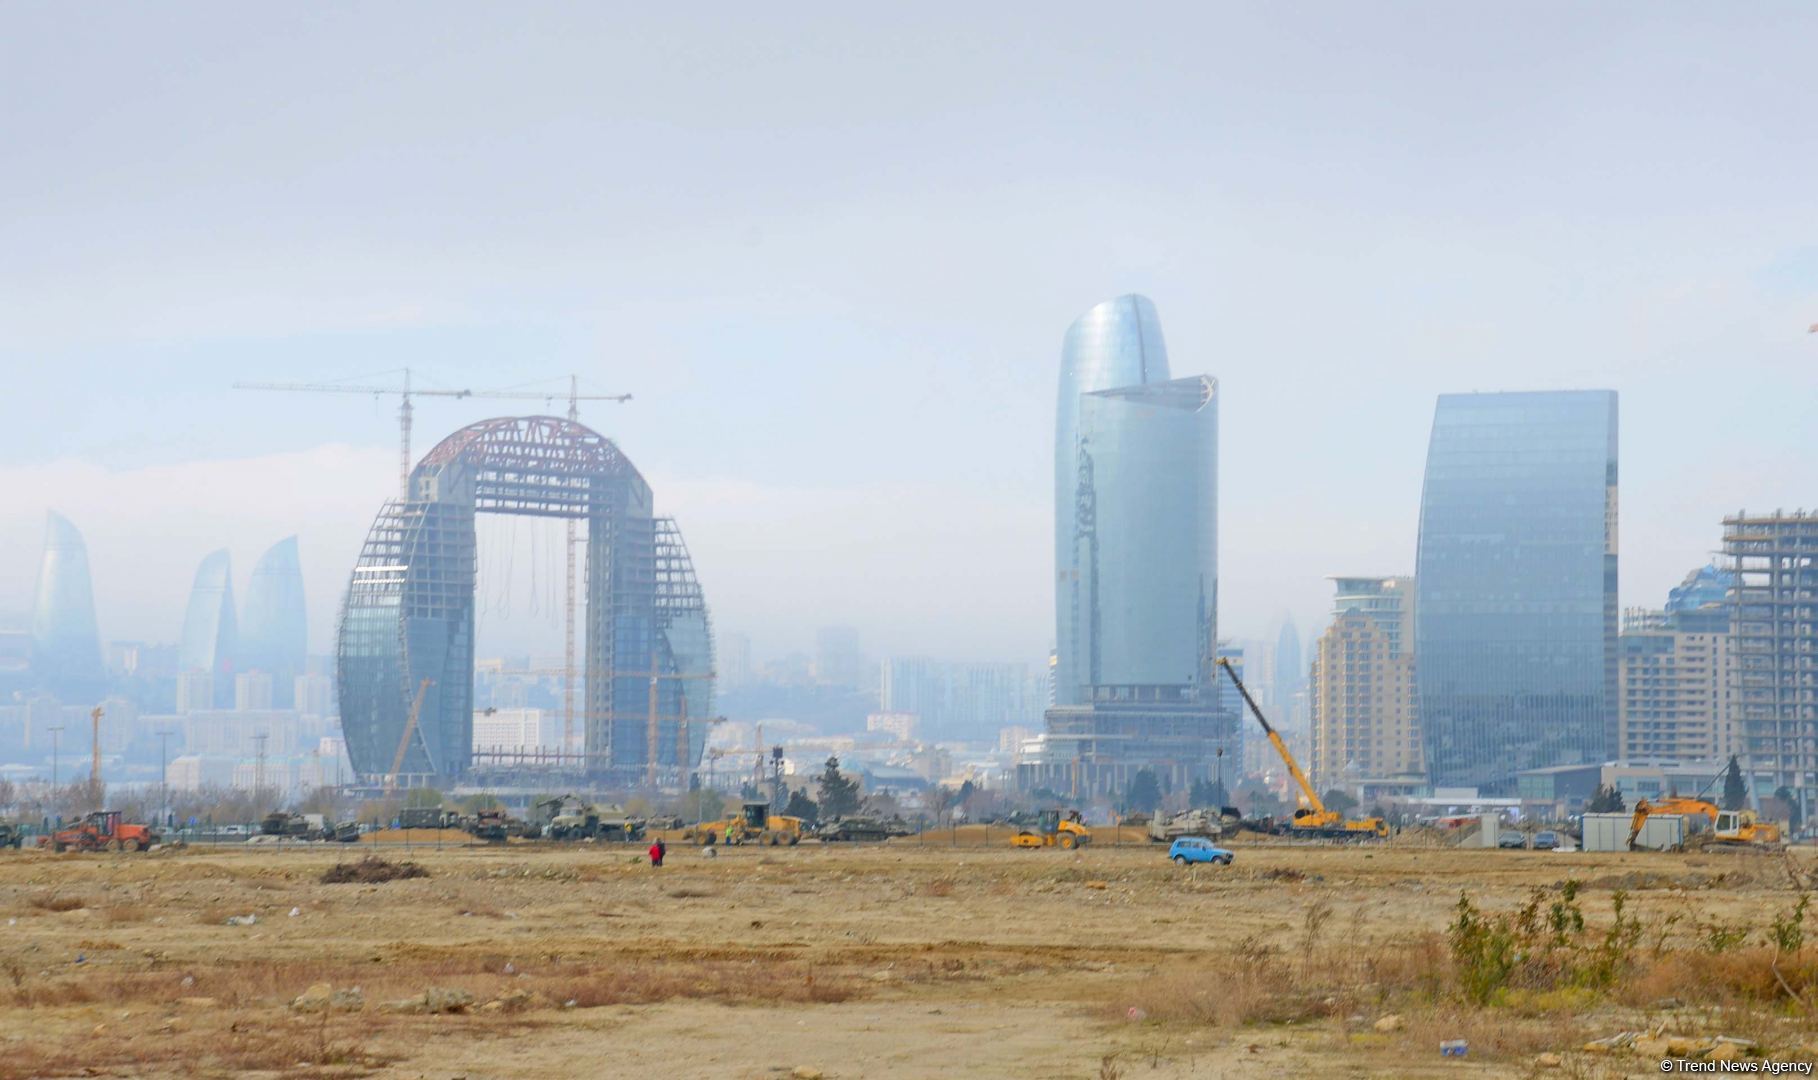 Начата подготовка к строительству Мемориального комплекса Отечественной войны и Музея Победы в Баку (ФОТО/ВИДЕО)